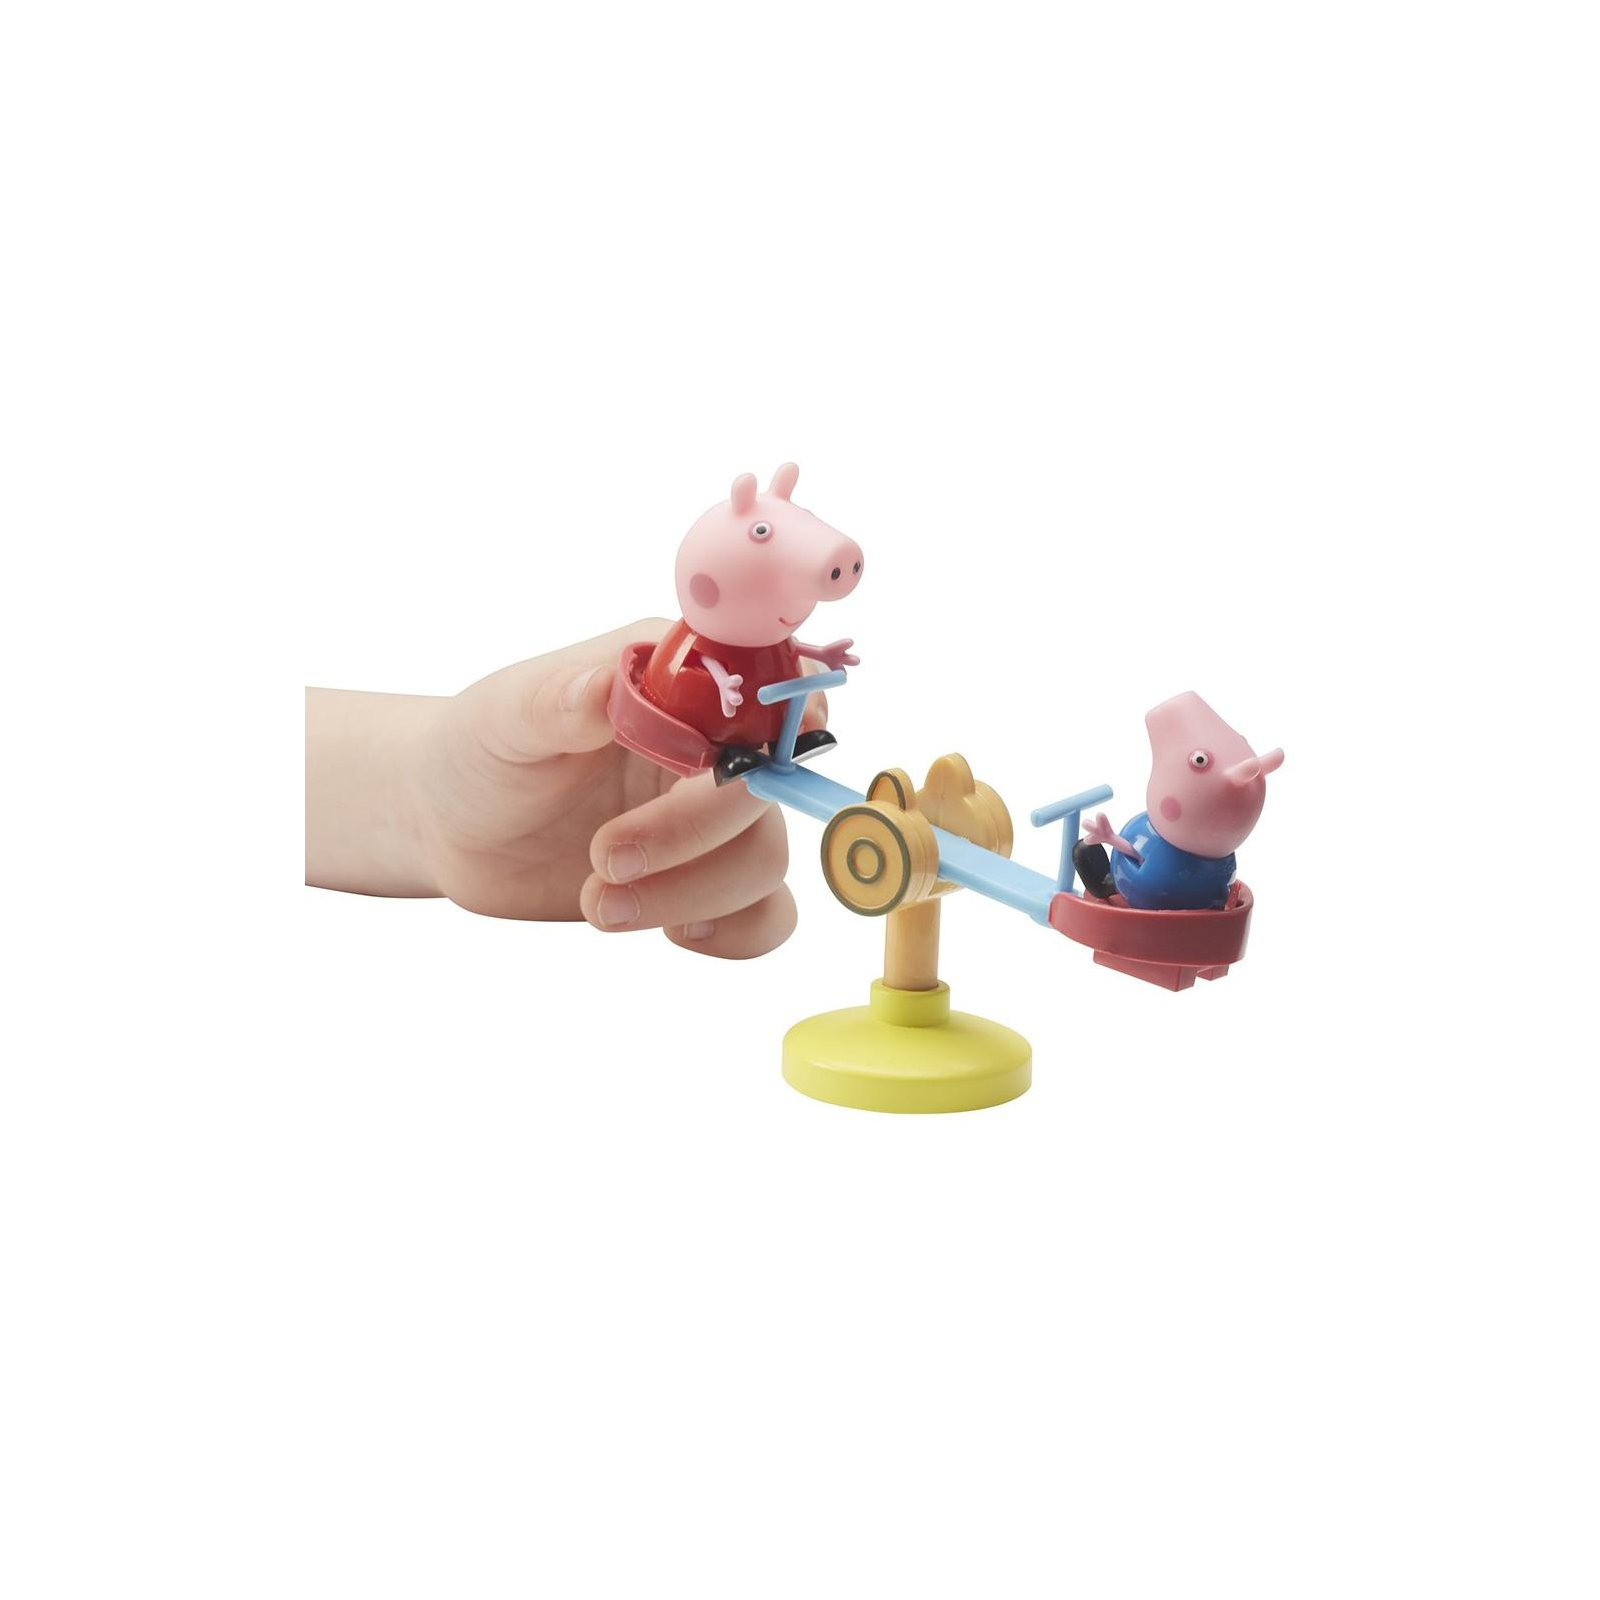 Ігровий набір Peppa Pig ДОМ ПЕППЫ С ЛУЖАЙКОЙ (домик с аксессуарами, 2 фигурки) (06156) зображення 5